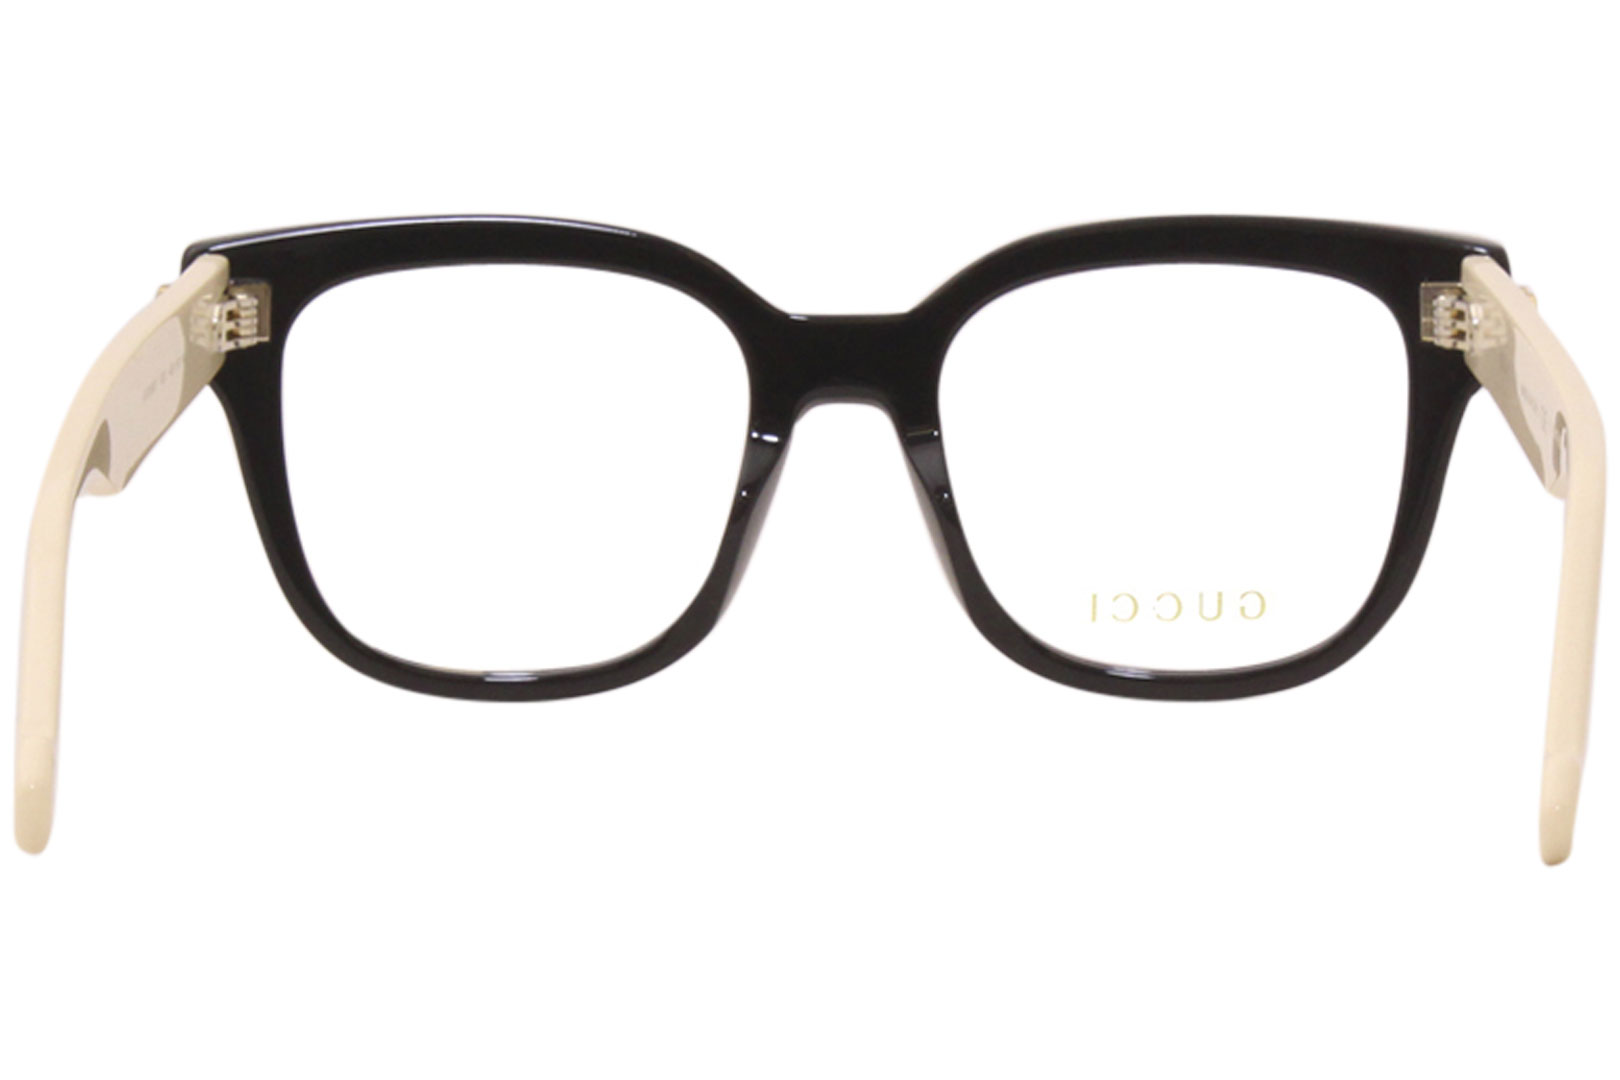 Gucci Eyeglasses Frame Women's GG0958O 002 Black/White 49-18-140 ...